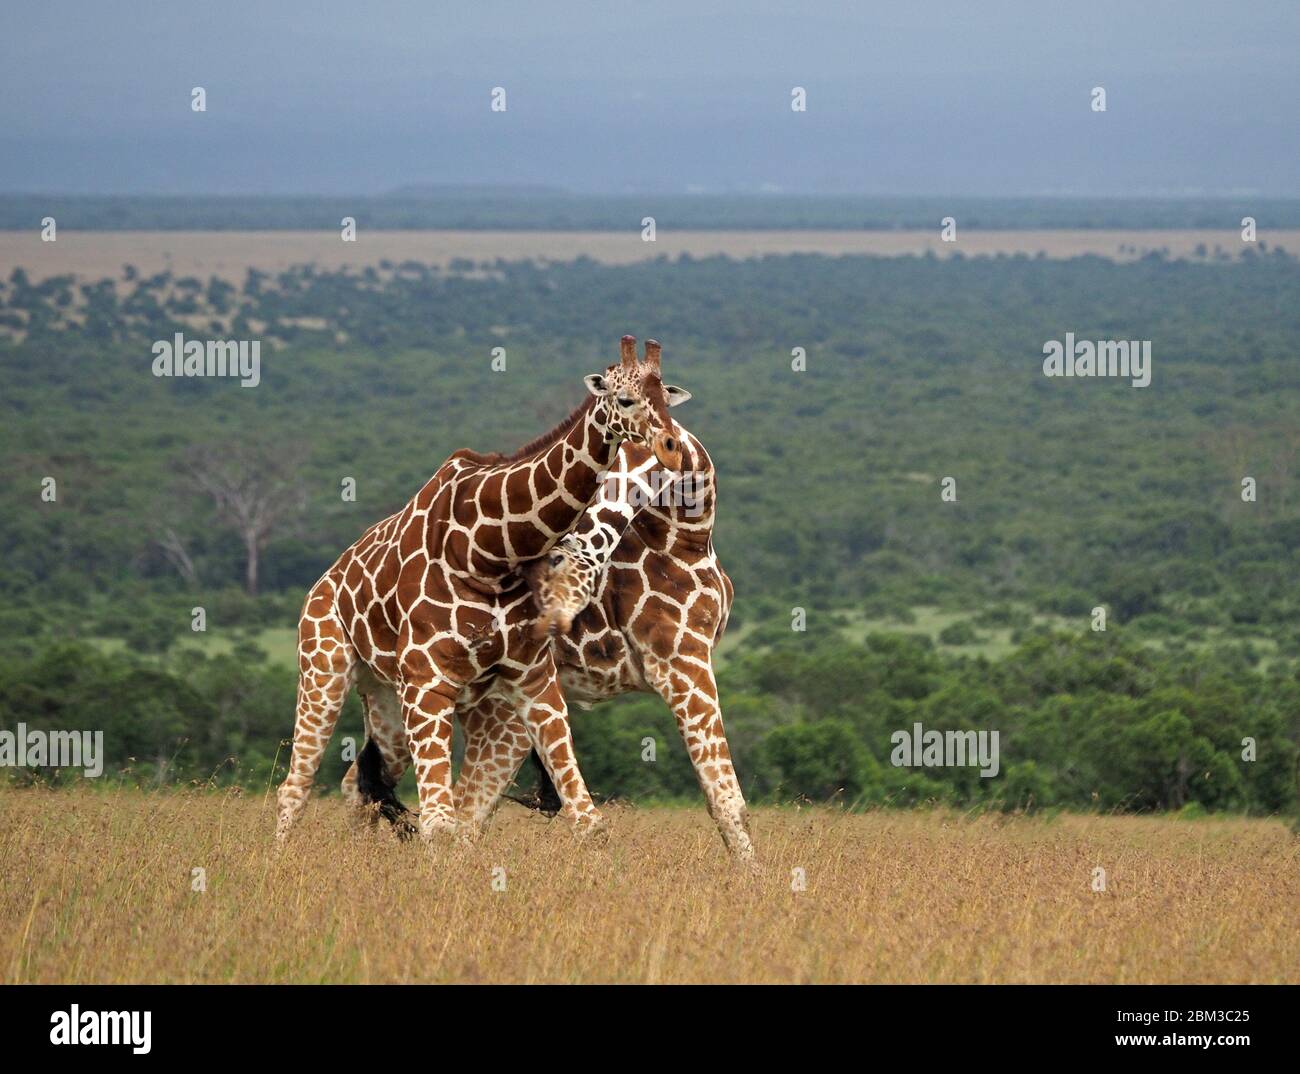 Due vecchie giraffe toro reticulate (Giraffa camelopardis reticulata) lotta per diritto di accoppiamento con la femmina -OL Pejeta Conservancy, Laikipia, Kenya, Africa Foto Stock